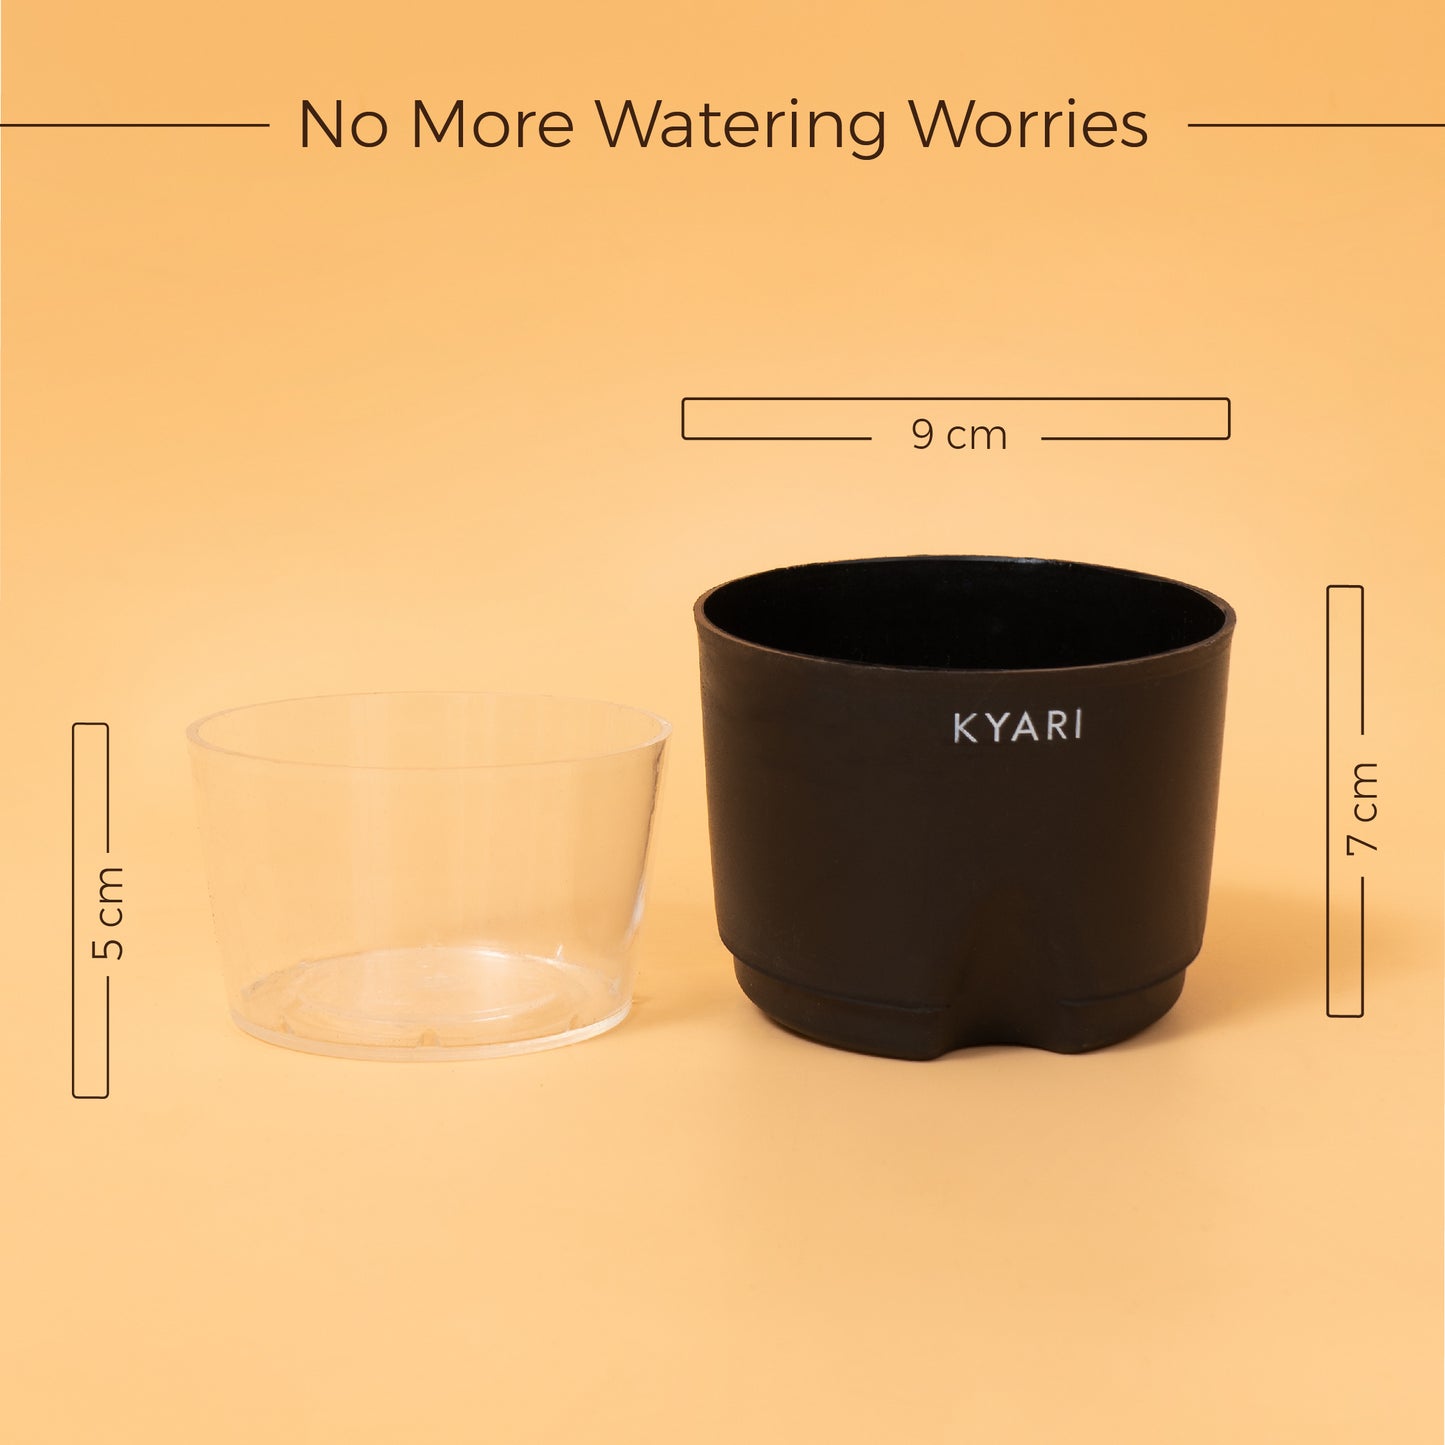 Water 4" Pot- Self-Watering Pot